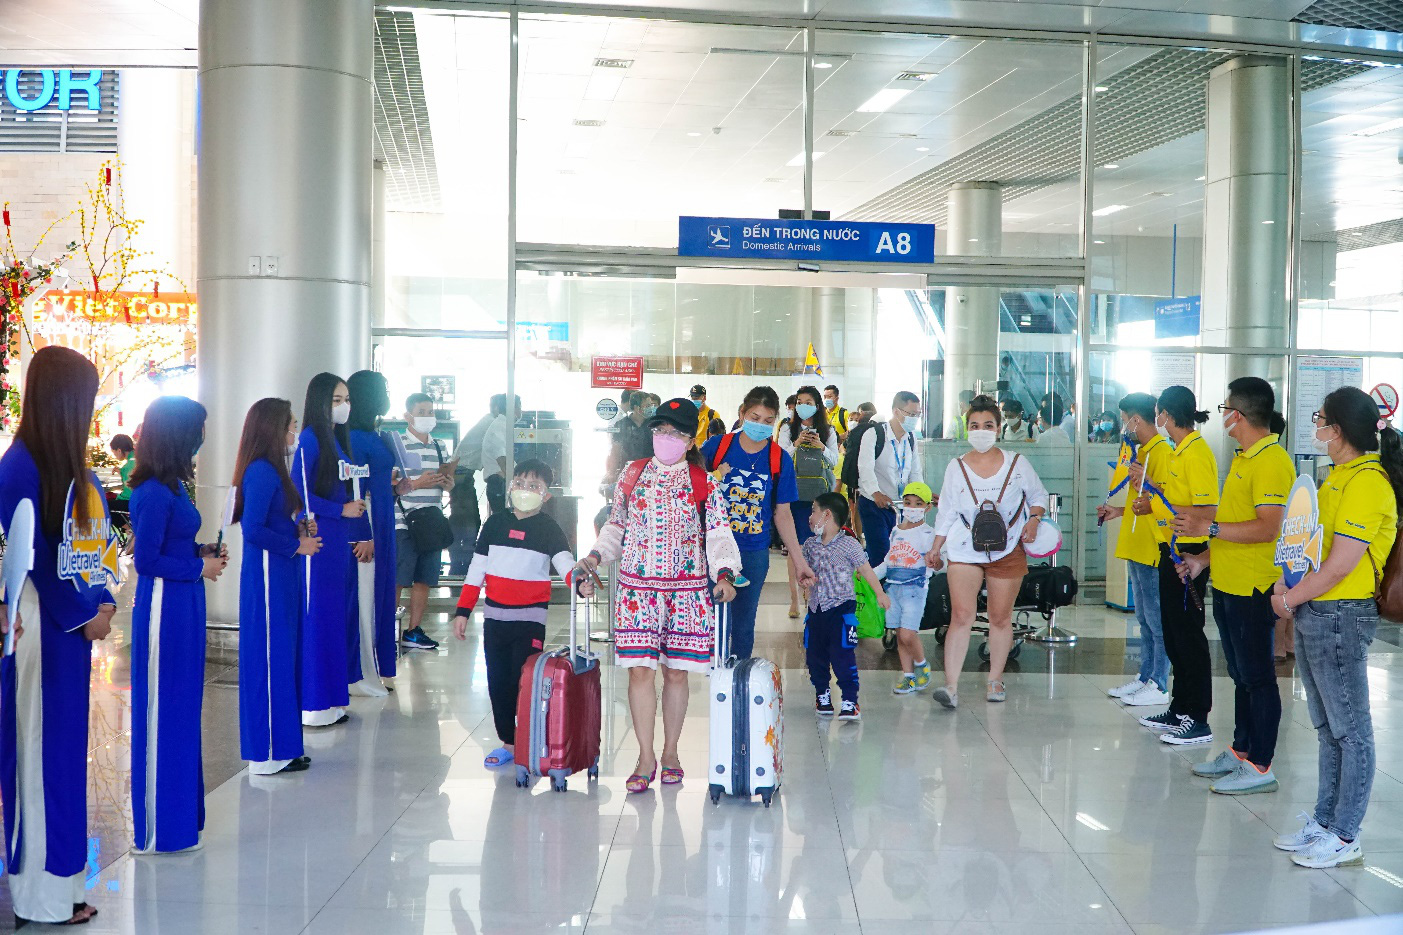 Vietravel Airlines khai trương hệ thống phòng vé chính hãng trên toàn quốc - Ảnh 3.